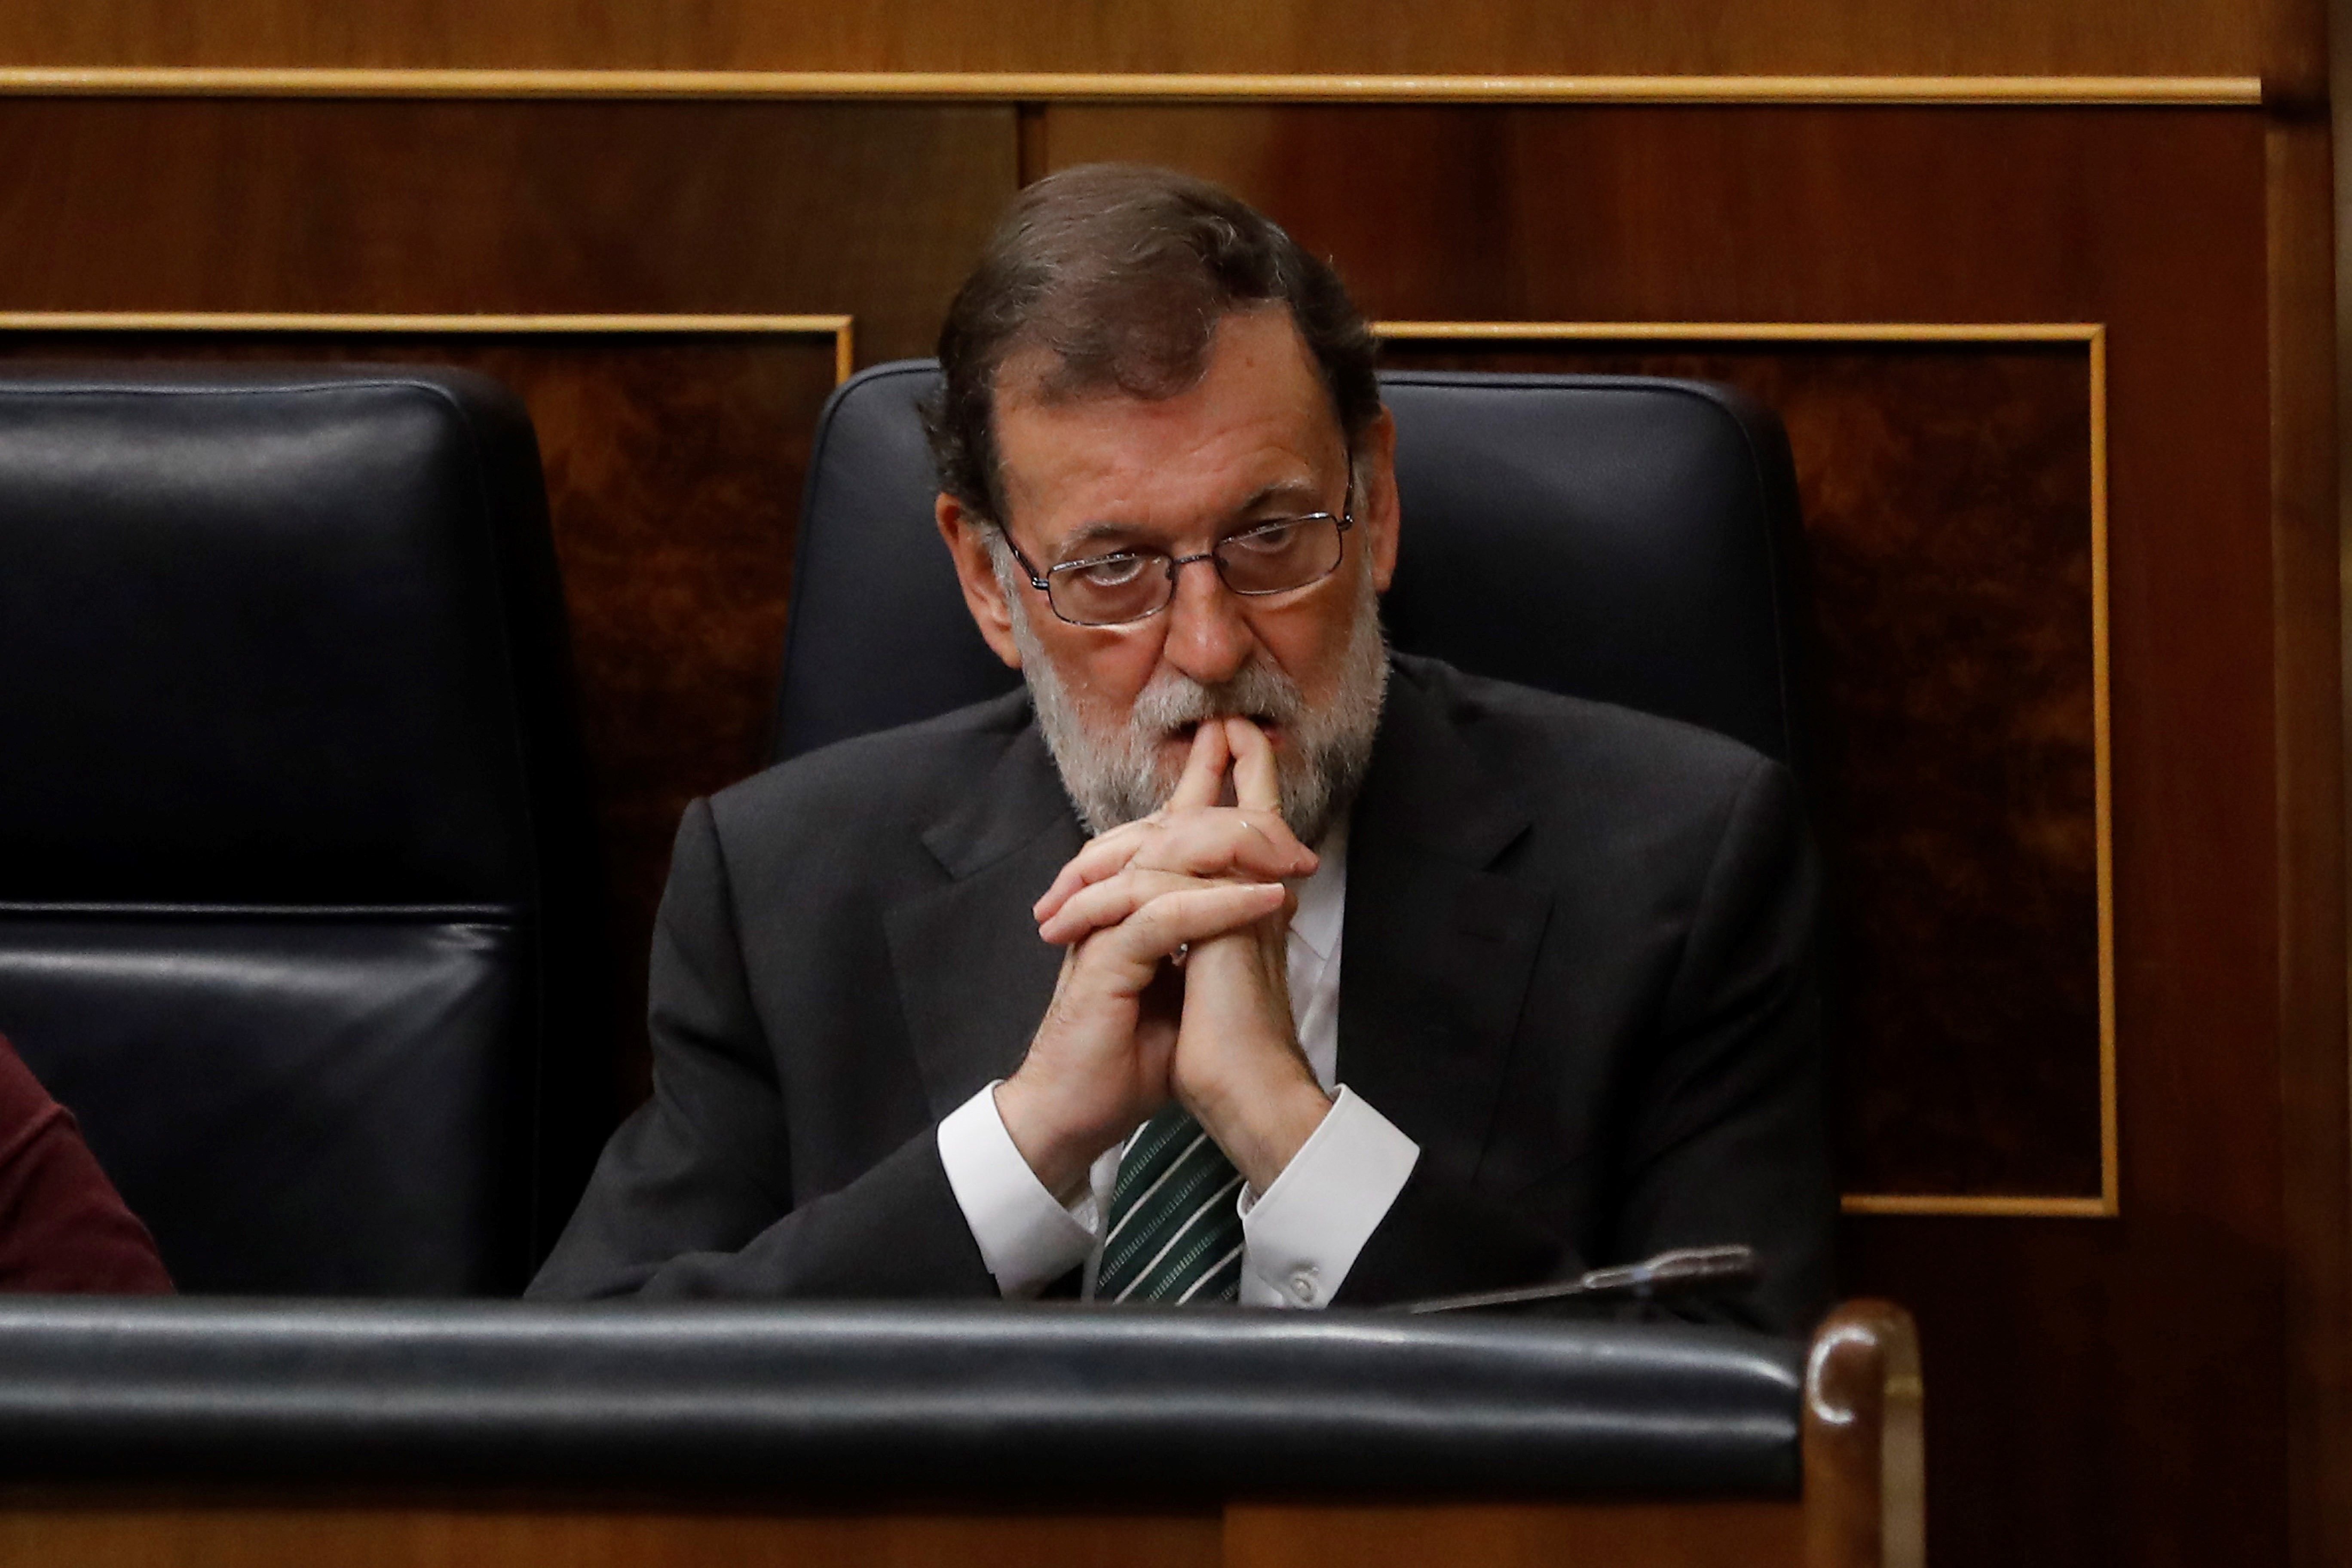 ¿Crees que Rajoy activará el artículo 155?